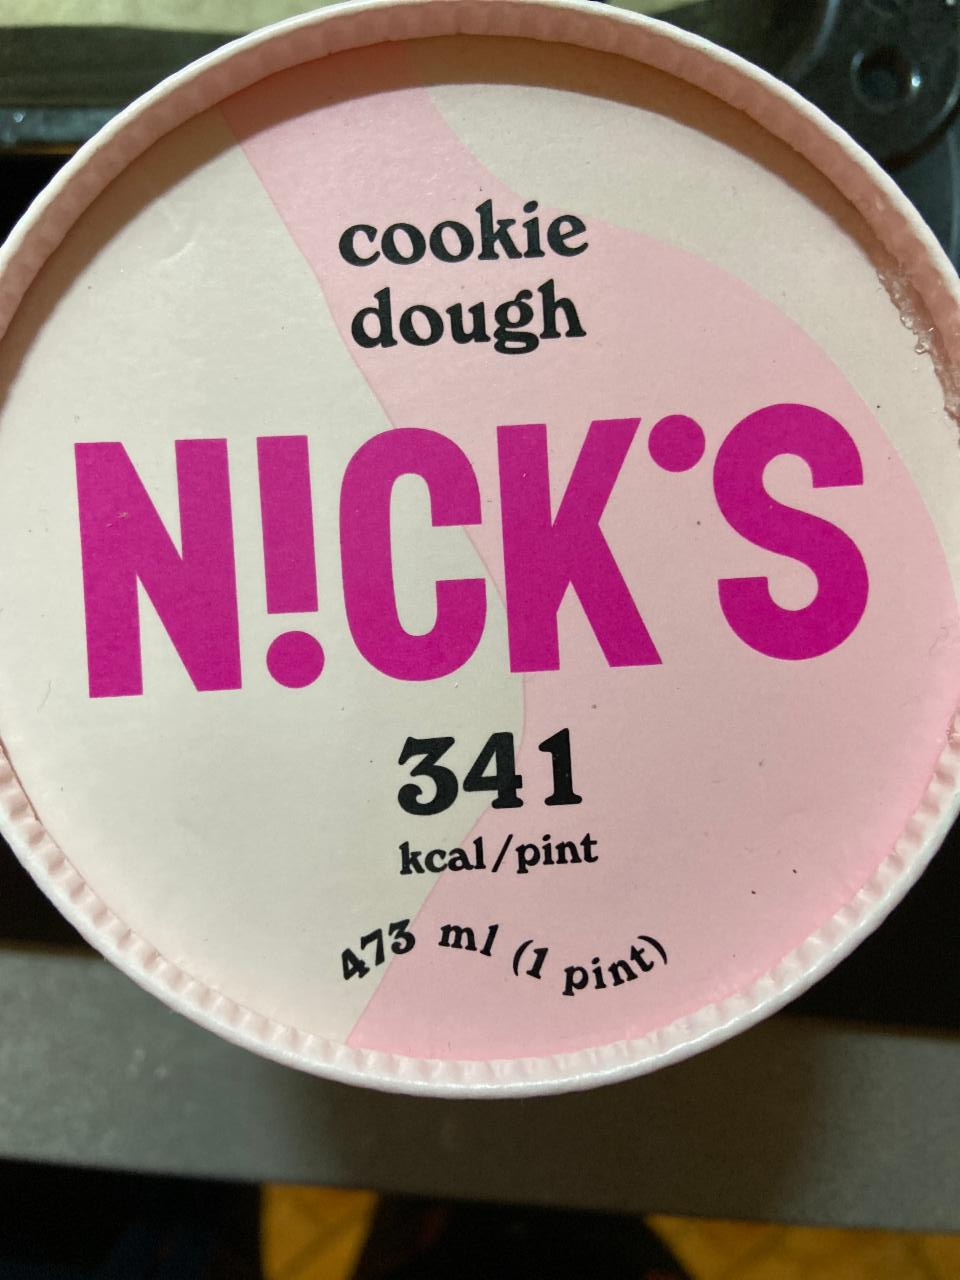 Fotografie - Nick’s cookie dough